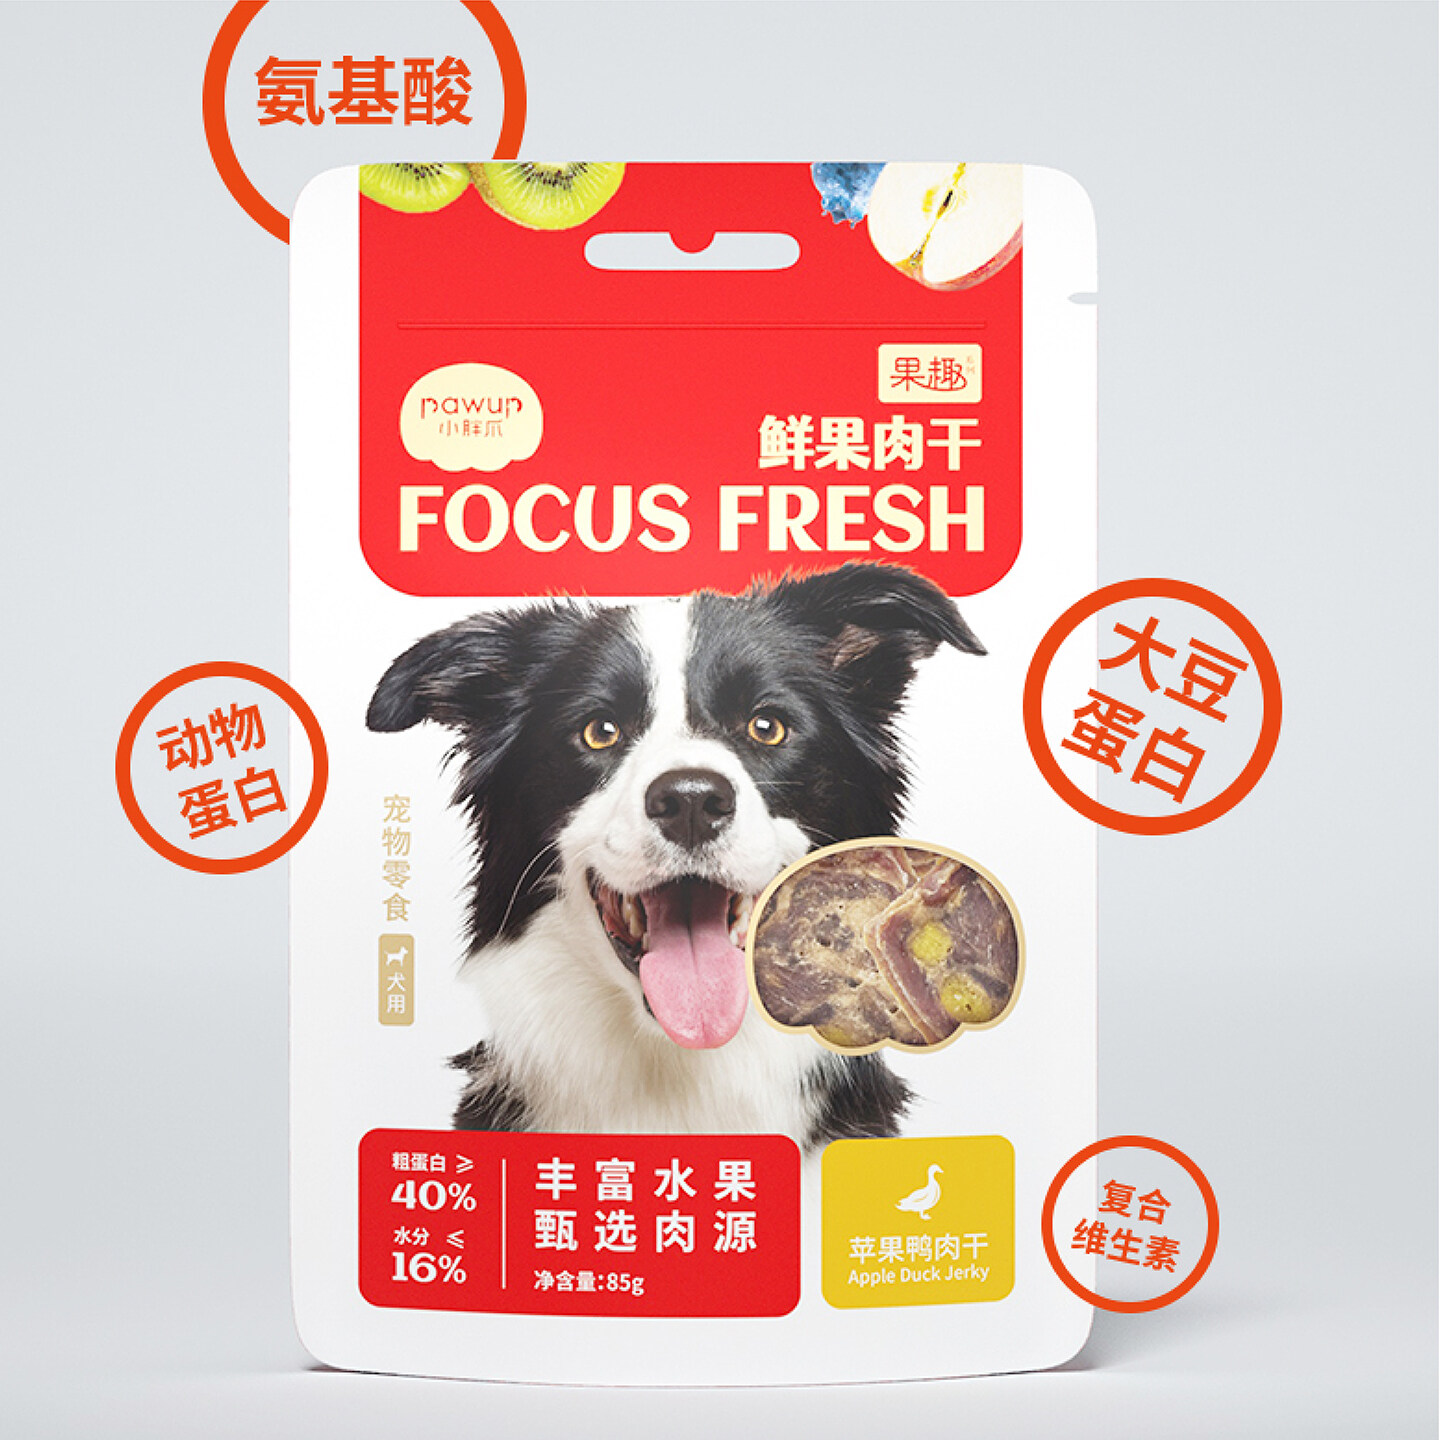 网红宠物零食包装设计-小胖爪宠物品牌logo及包装设计